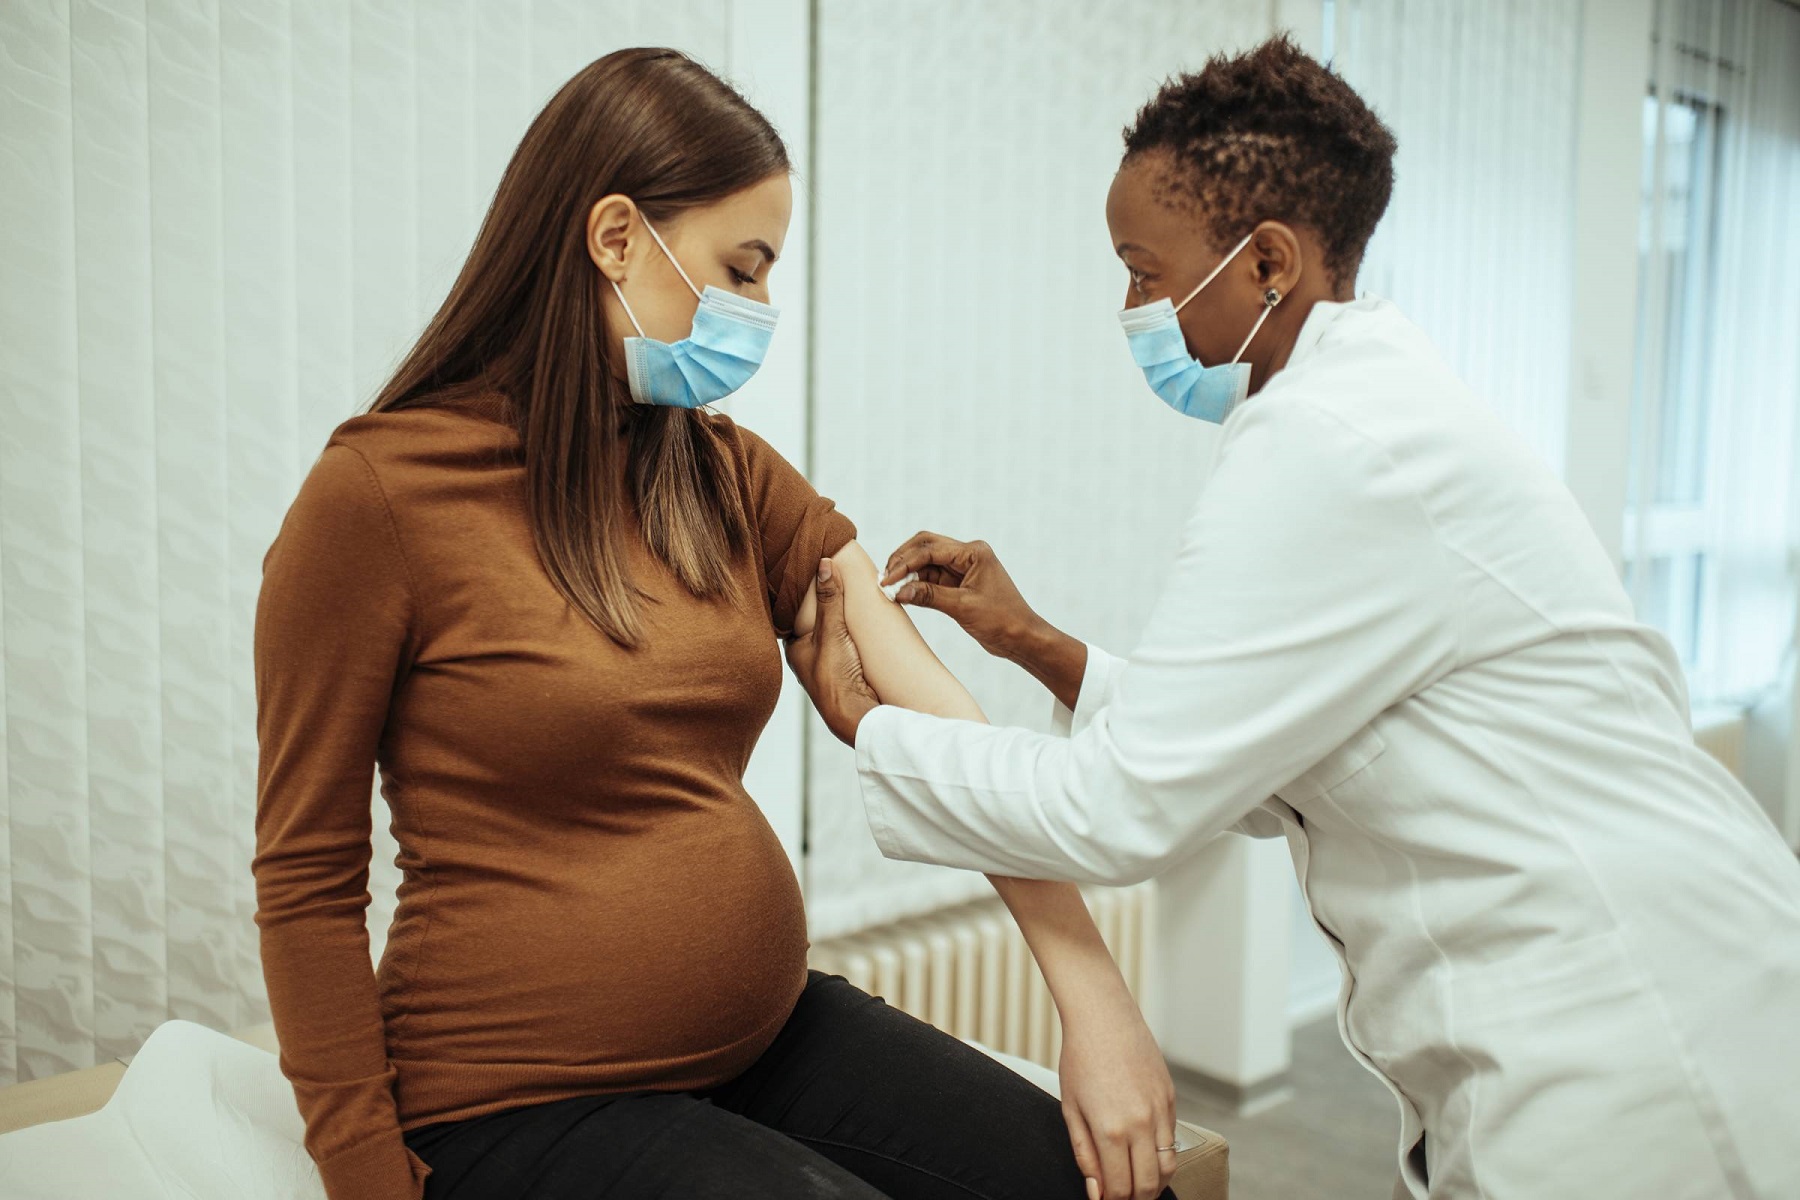 Εμβόλια Covid Εγκυμοσύνη: Εμφανίζονται ασφαλή σε έγκυες γυναίκες, σύμφωνα με προκαταρκτικά αποτελέσματα